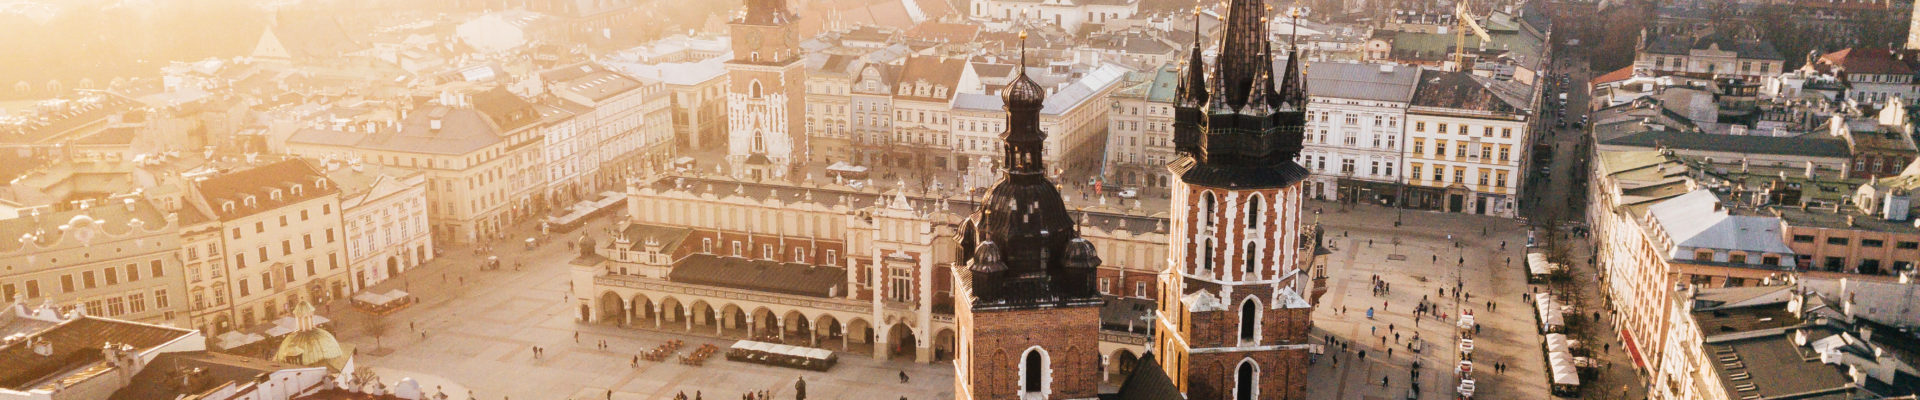 Ceny mieszkań w Krakowie, ważne informacje dla sprzedających